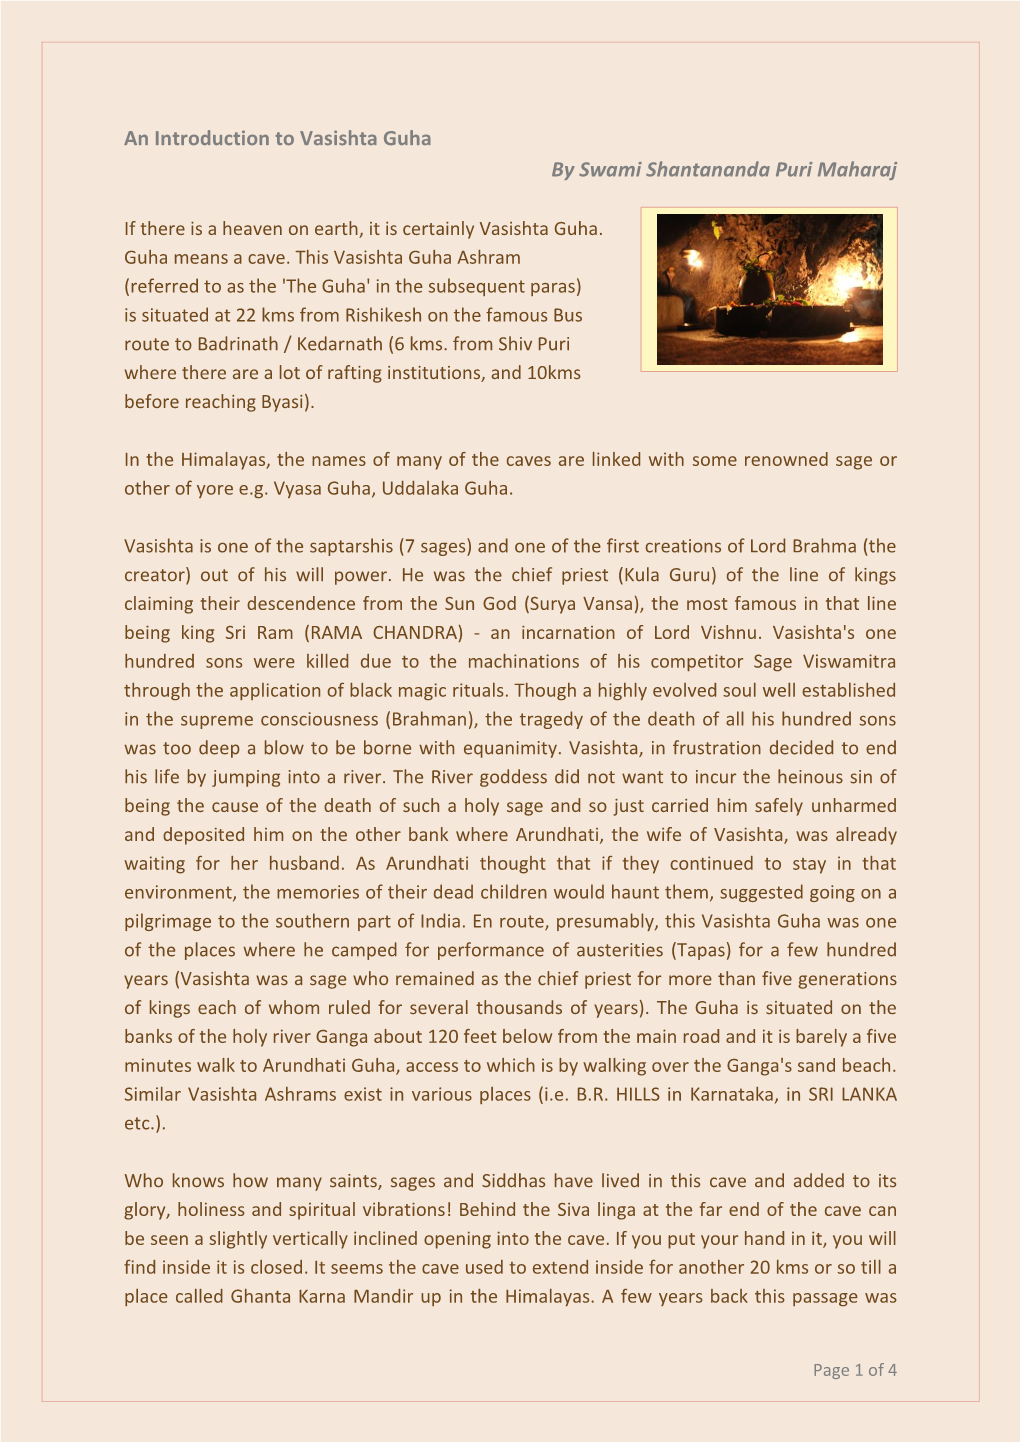 An Introduction to Vasishta Guha by Swami Shantananda Puri Maharaj